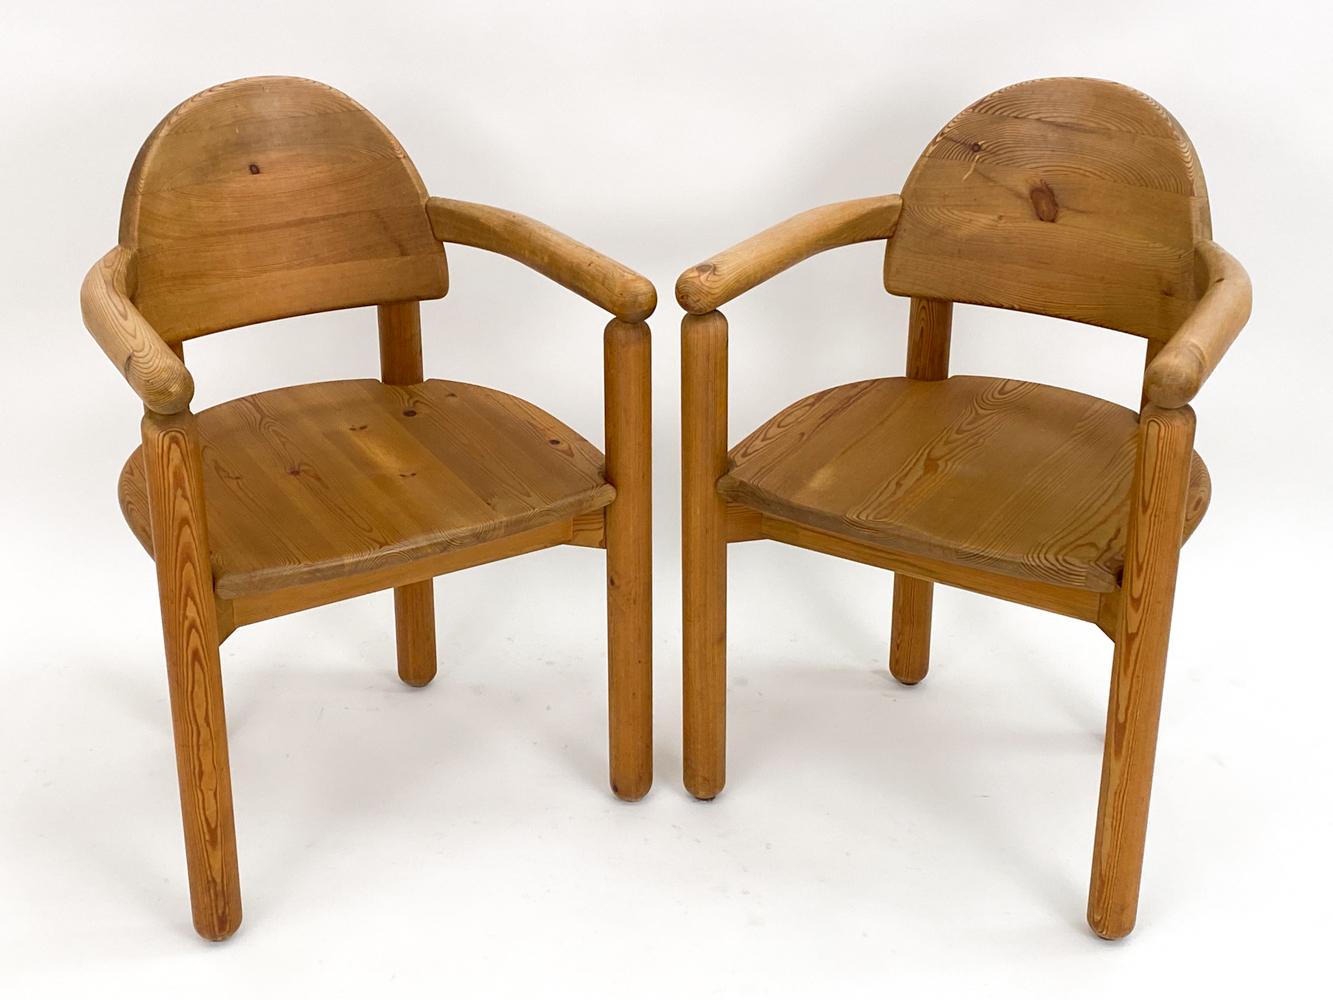 Les fauteuils en pin de Rainer Daumiller, fabriqués au Danemark vers 1980, sont un mélange harmonieux de nature brute et de design raffiné. Chaque chaise semble avoir été sculptée dans le cœur d'un pin majestueux, capturant l'essence et l'esprit